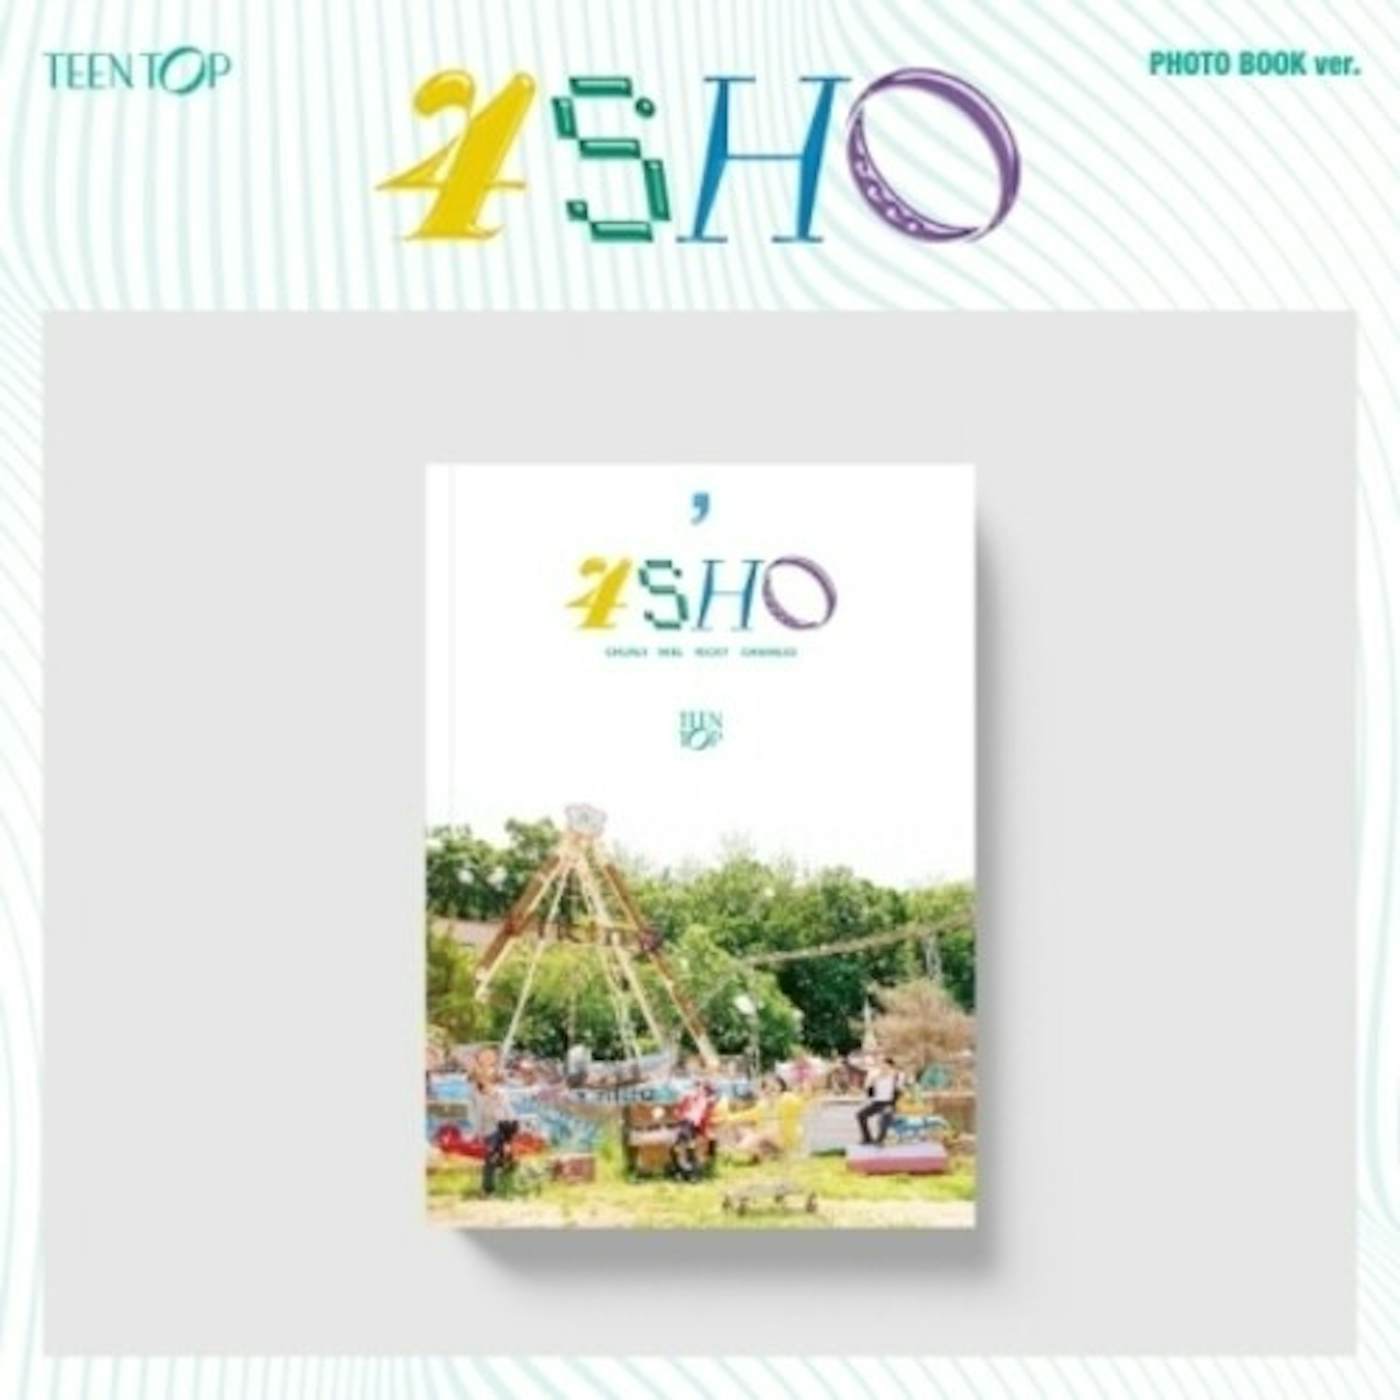 TEEN TOP 4SHO - PHOTO BOOK VERSION CD